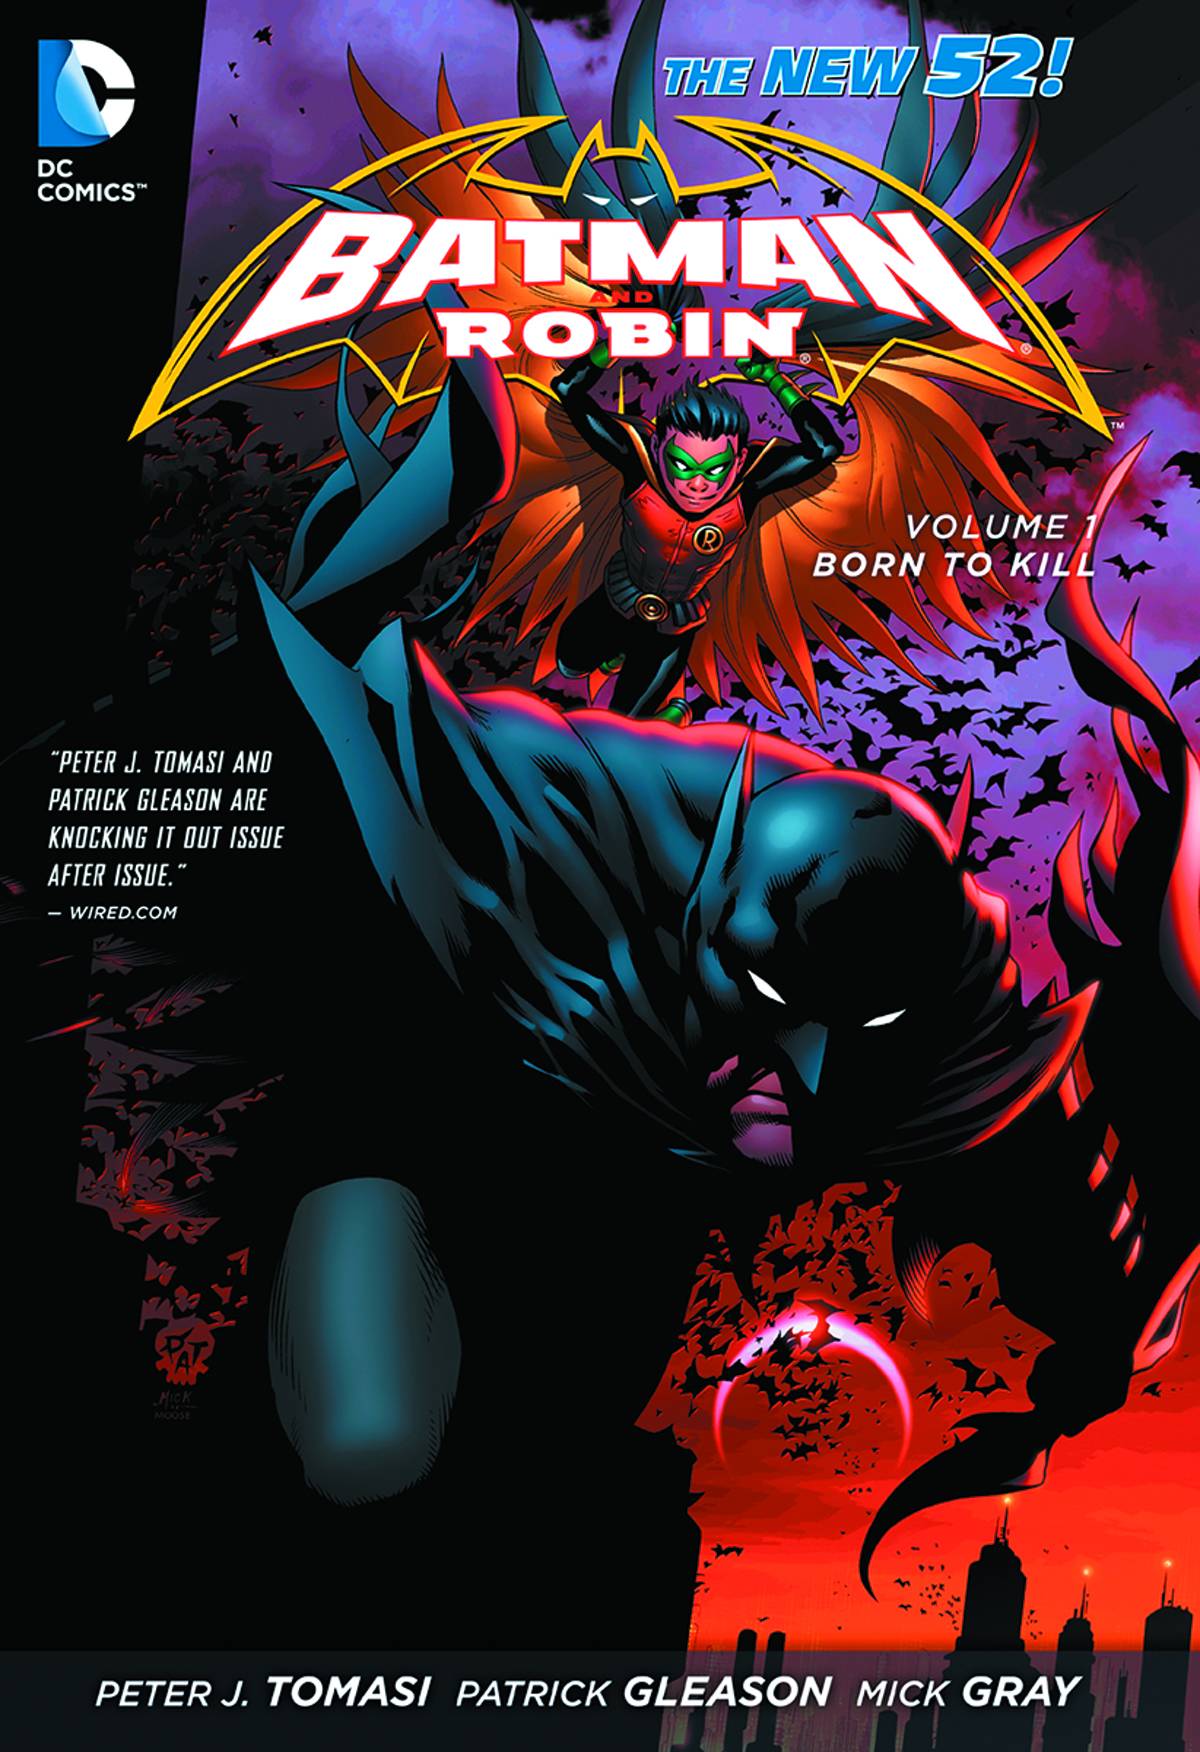 BATMAN & ROBIN TP VOL 01 BORN TO KILL (N52)